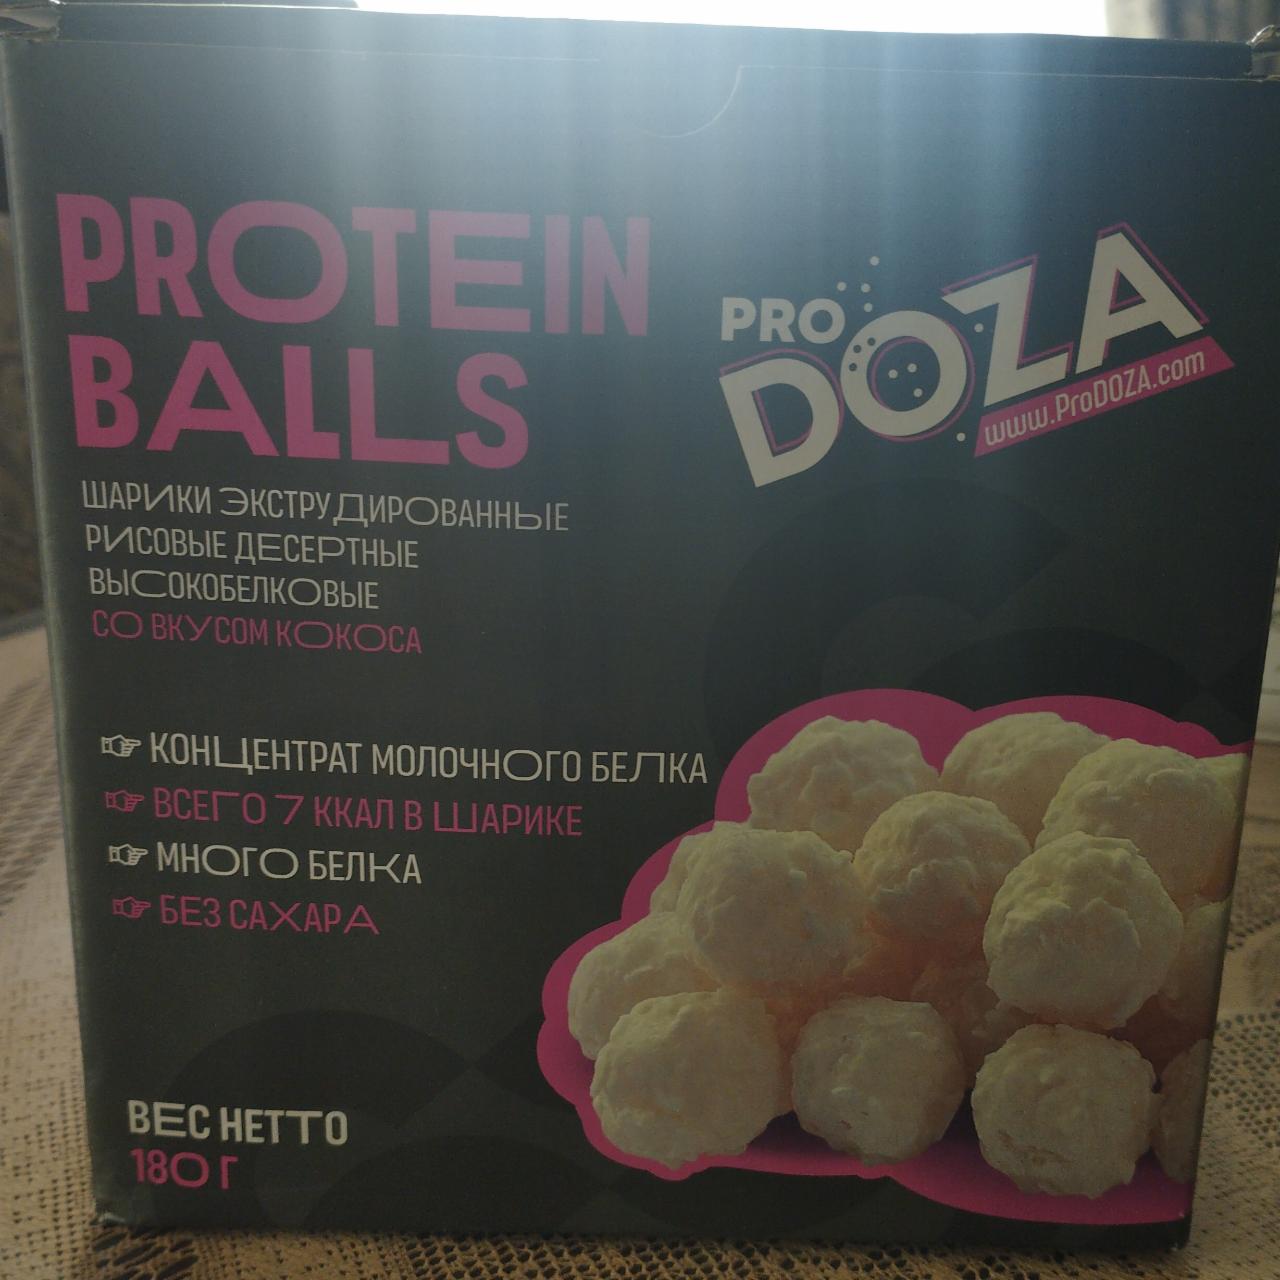 Фото - белковые шарики со вкусом кокоса ProDOZA